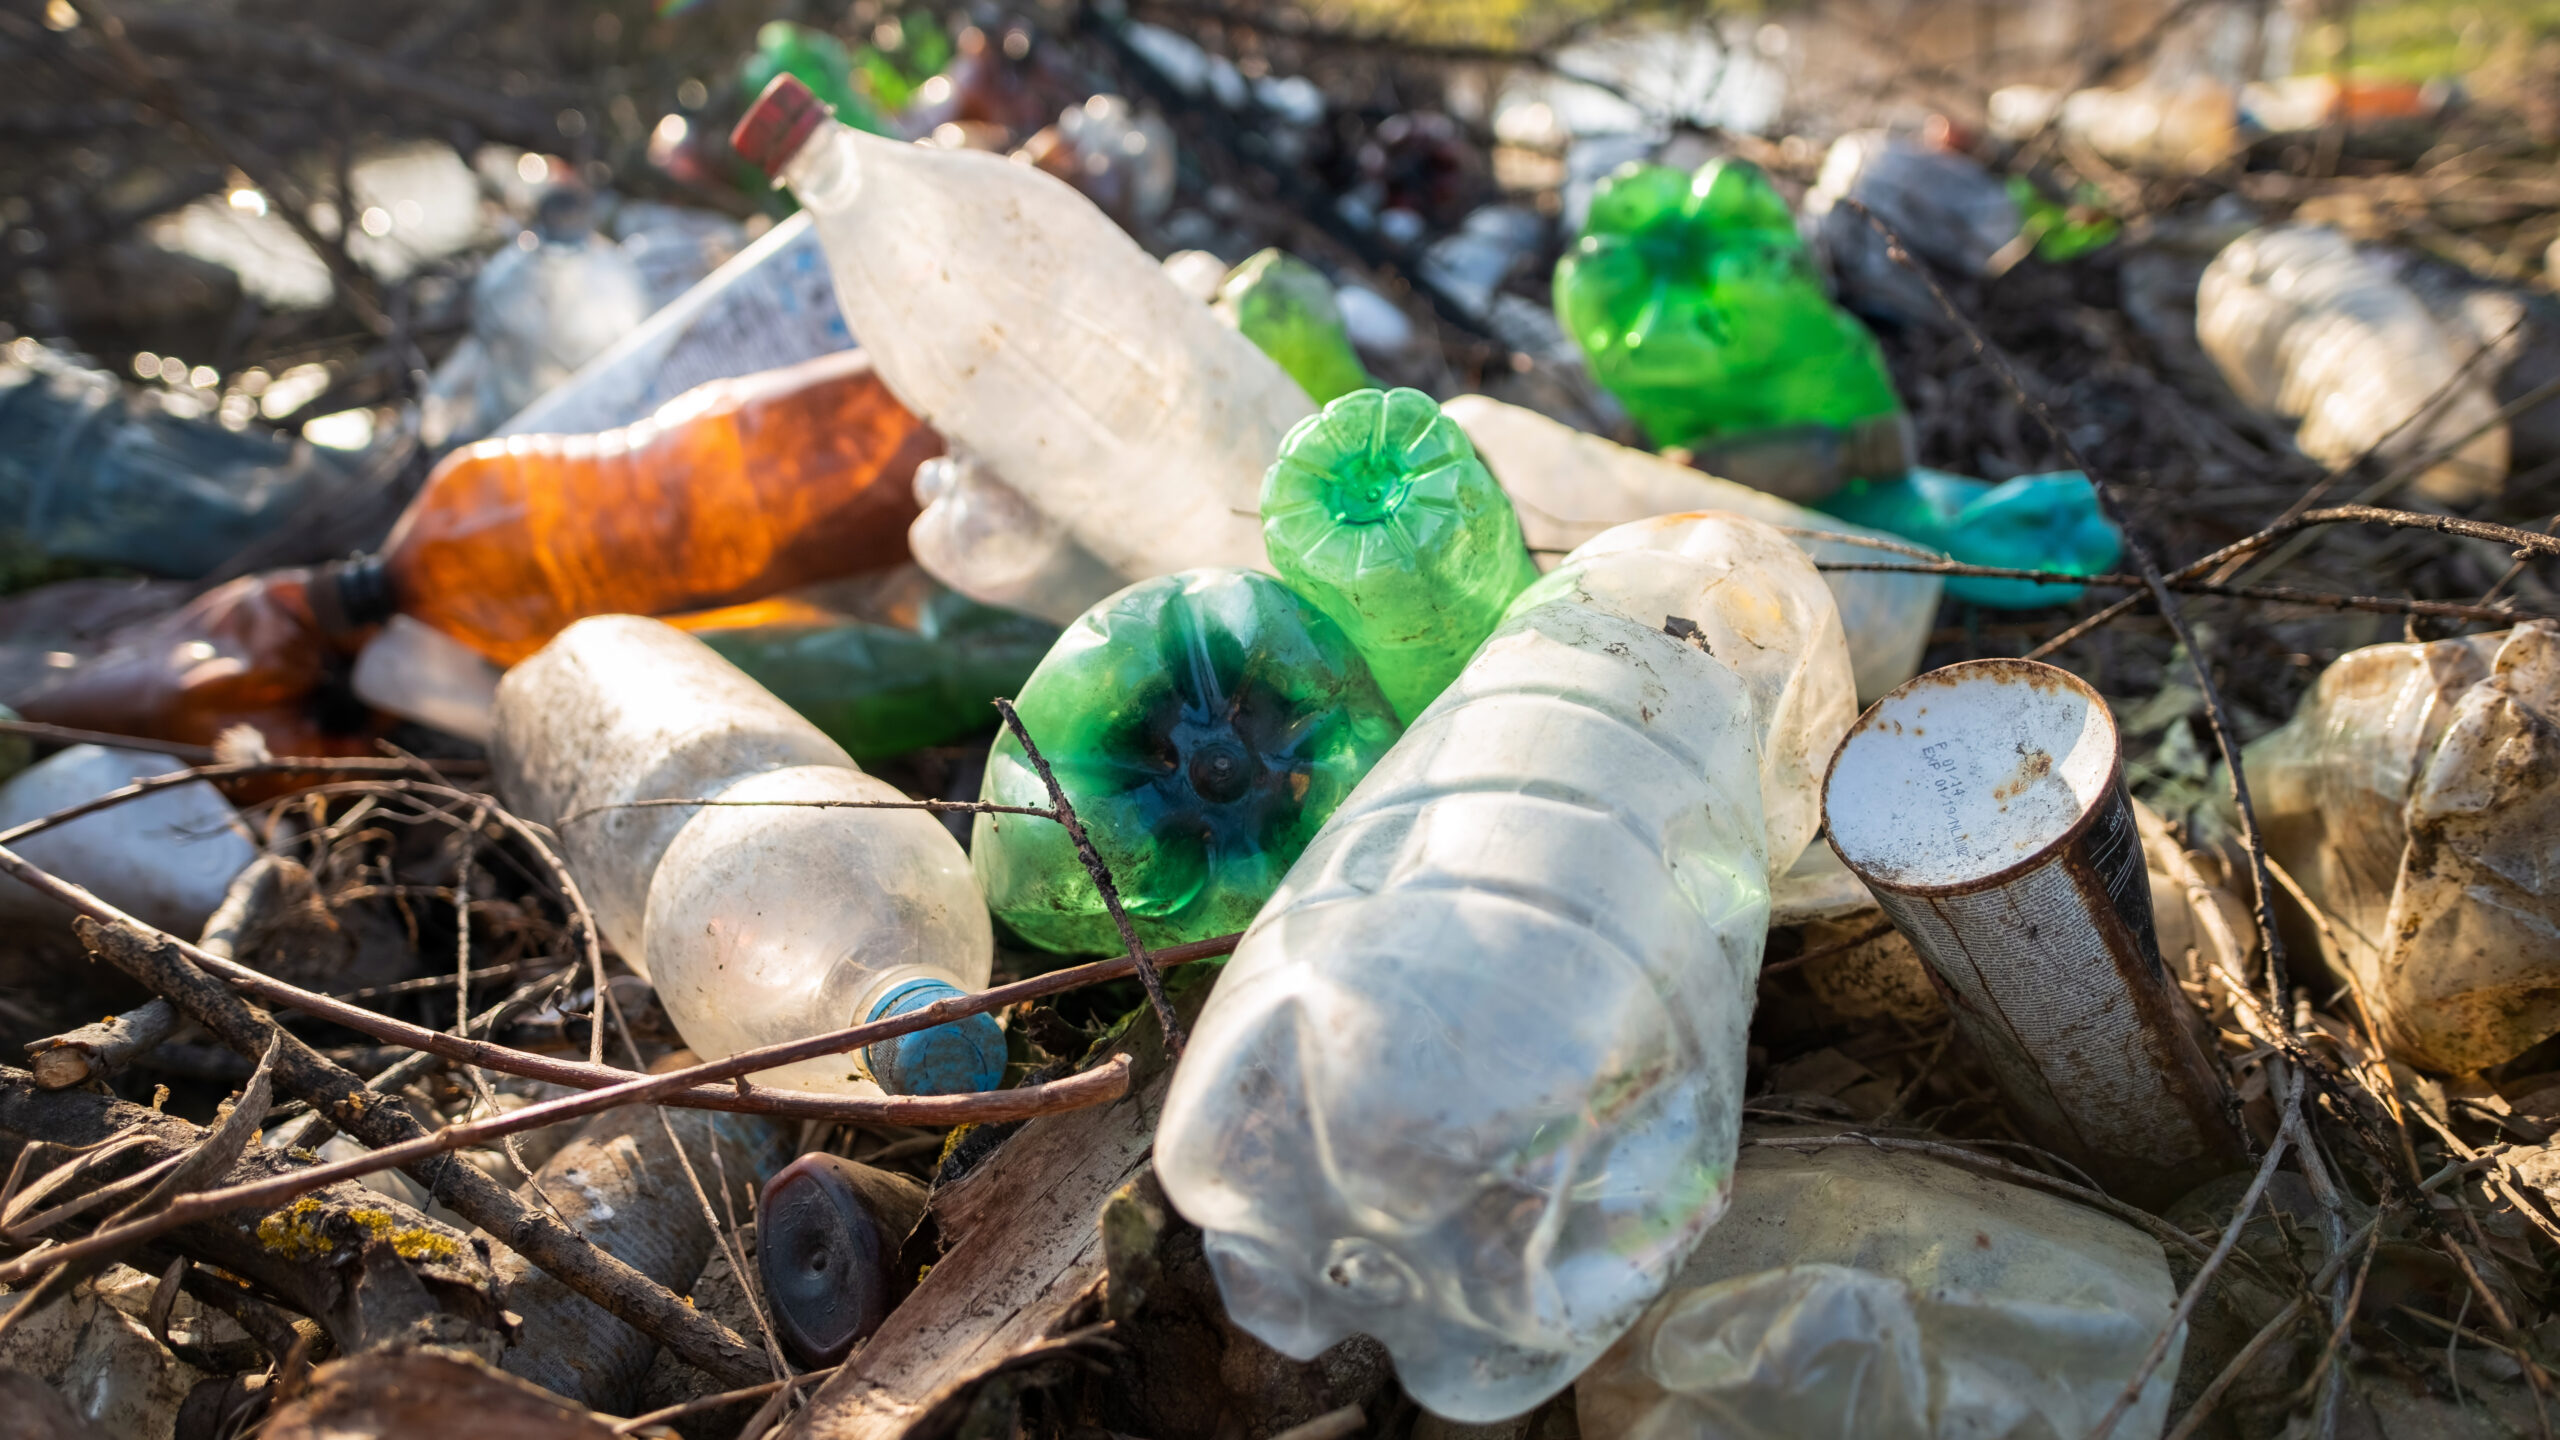 Cómo contamina el plástico al medio ambiente en los suelos